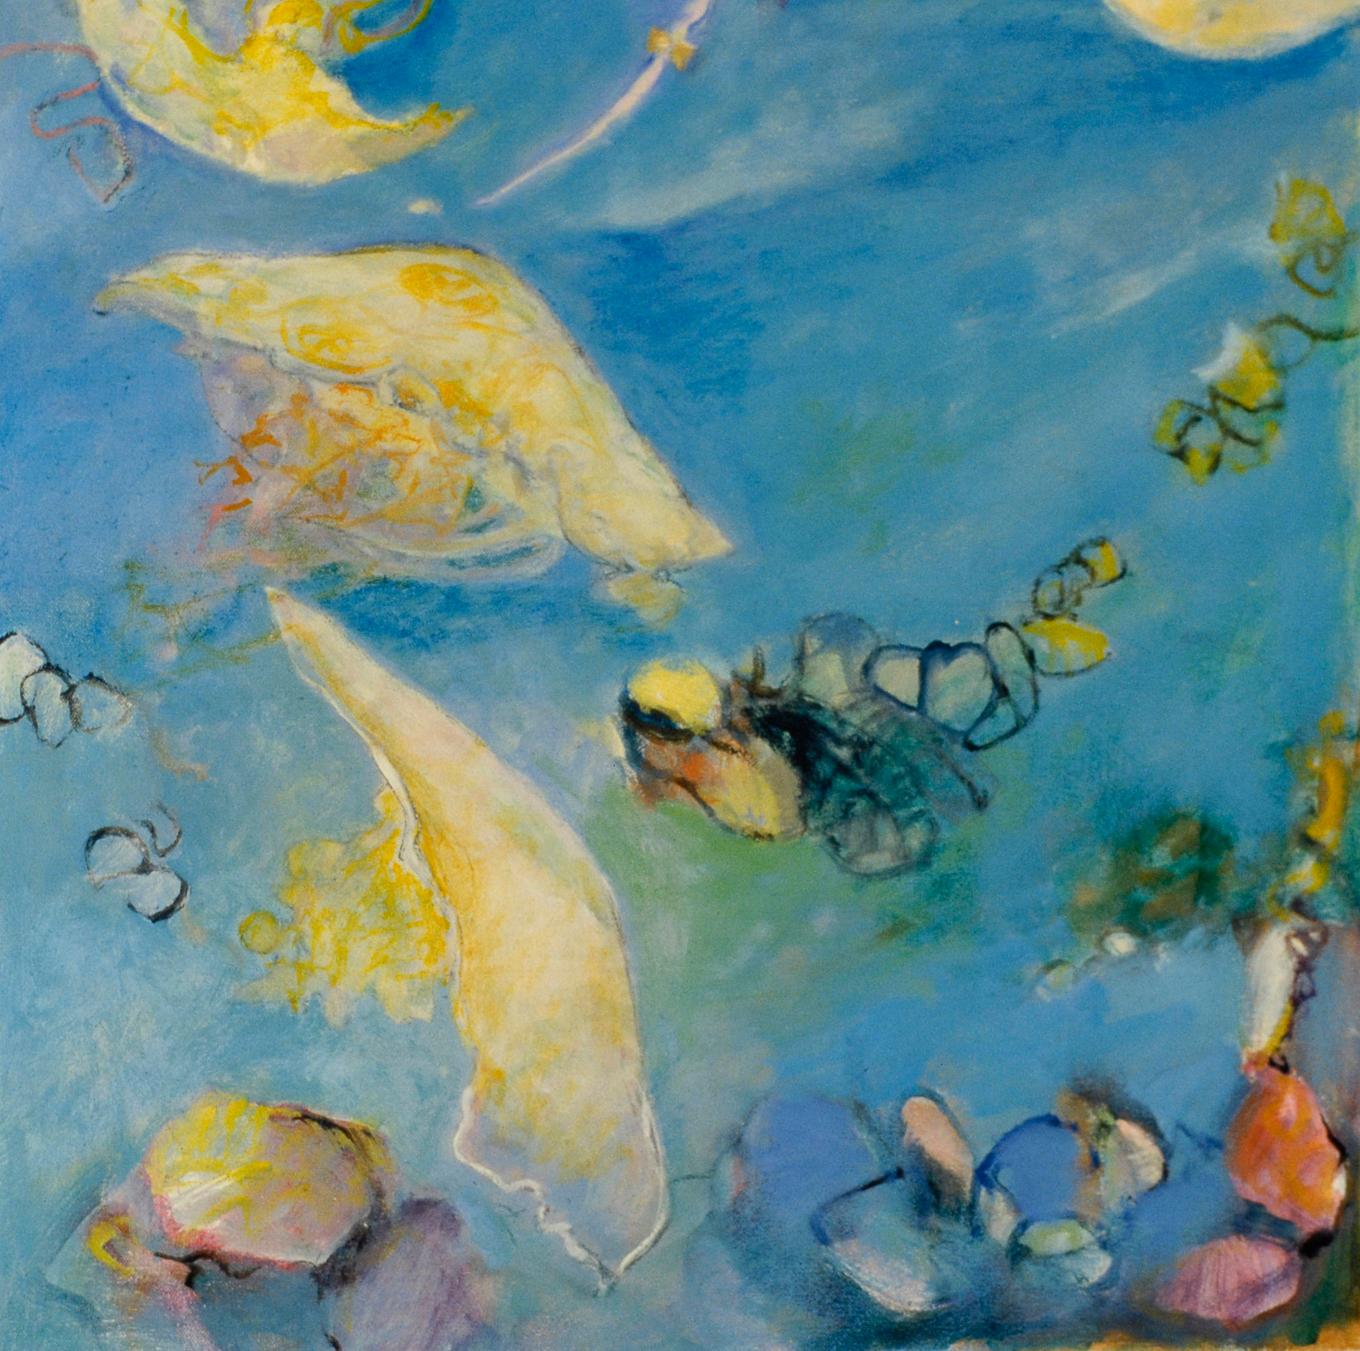 Sea Fan ist Teil der Serie Light in the Deep der Künstlerin Ellen Hart. Sea Fan erforscht  die allgegenwärtigen Licht-, Schatten- und Reflexionsmuster, die wir alle täglich erleben, für die wir uns aber nur selten interessieren. Die Werke spiegeln